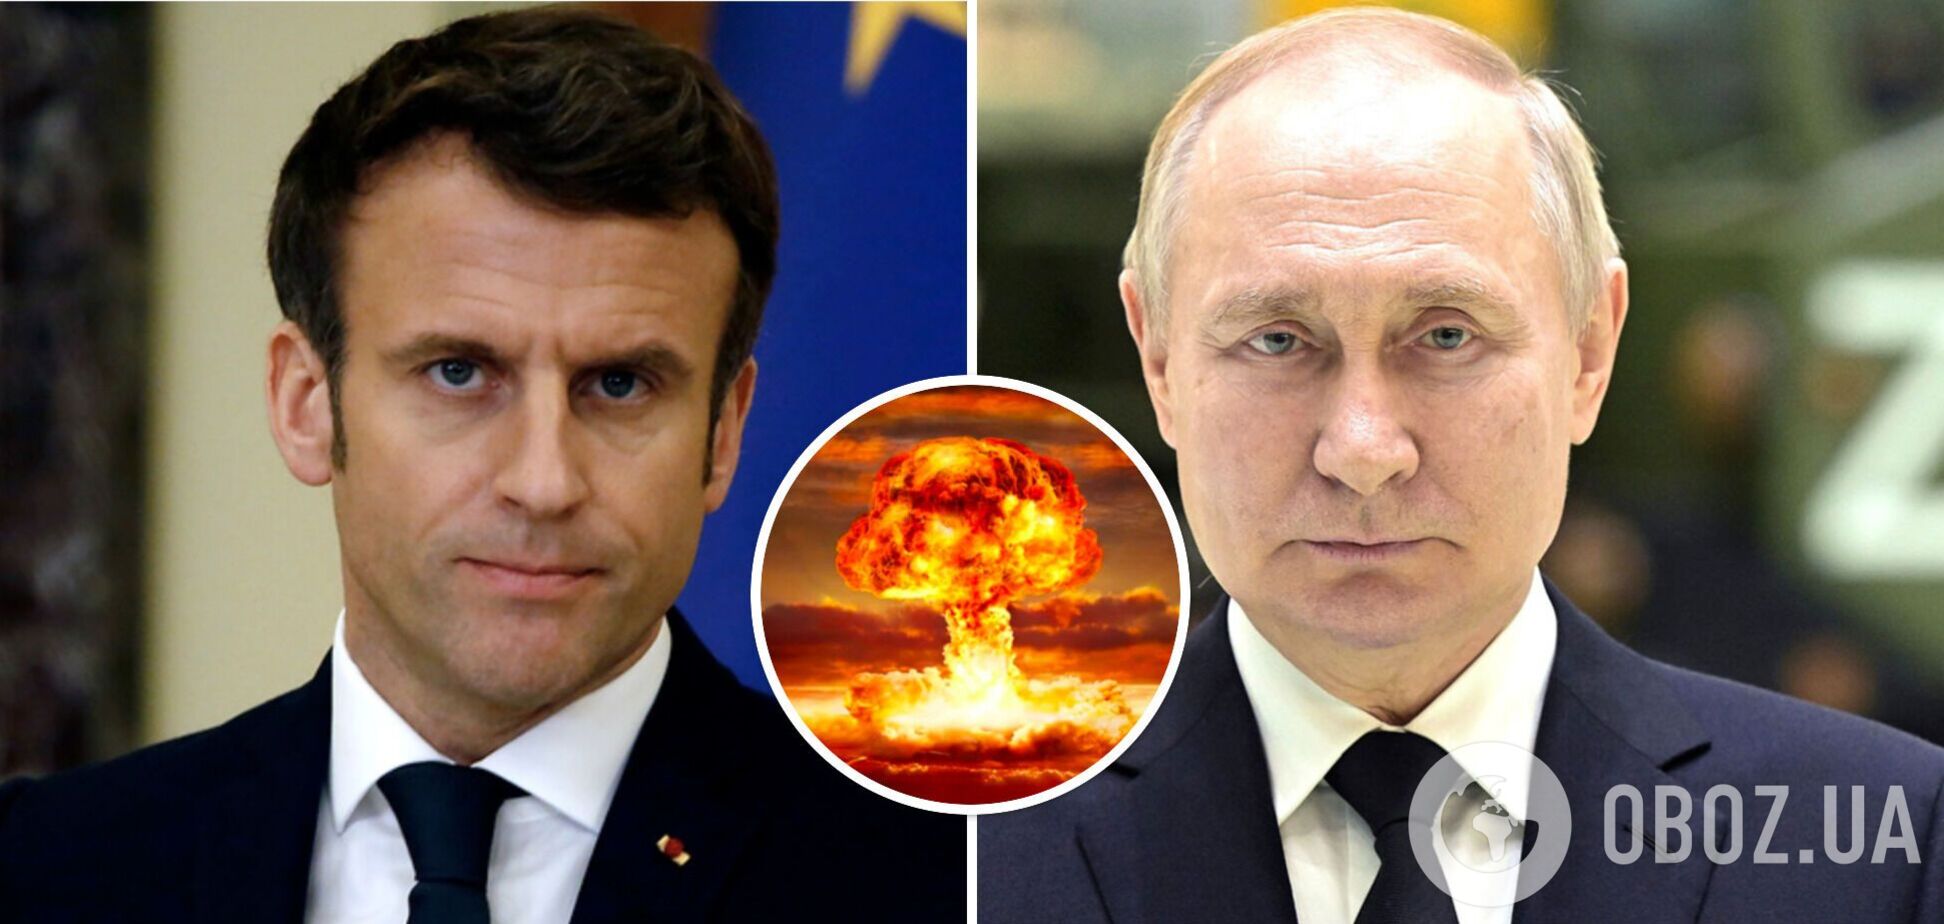 Эммануэль Макрон прокомментировал заявления Владимира Путина касательно готовности к ядерной войне